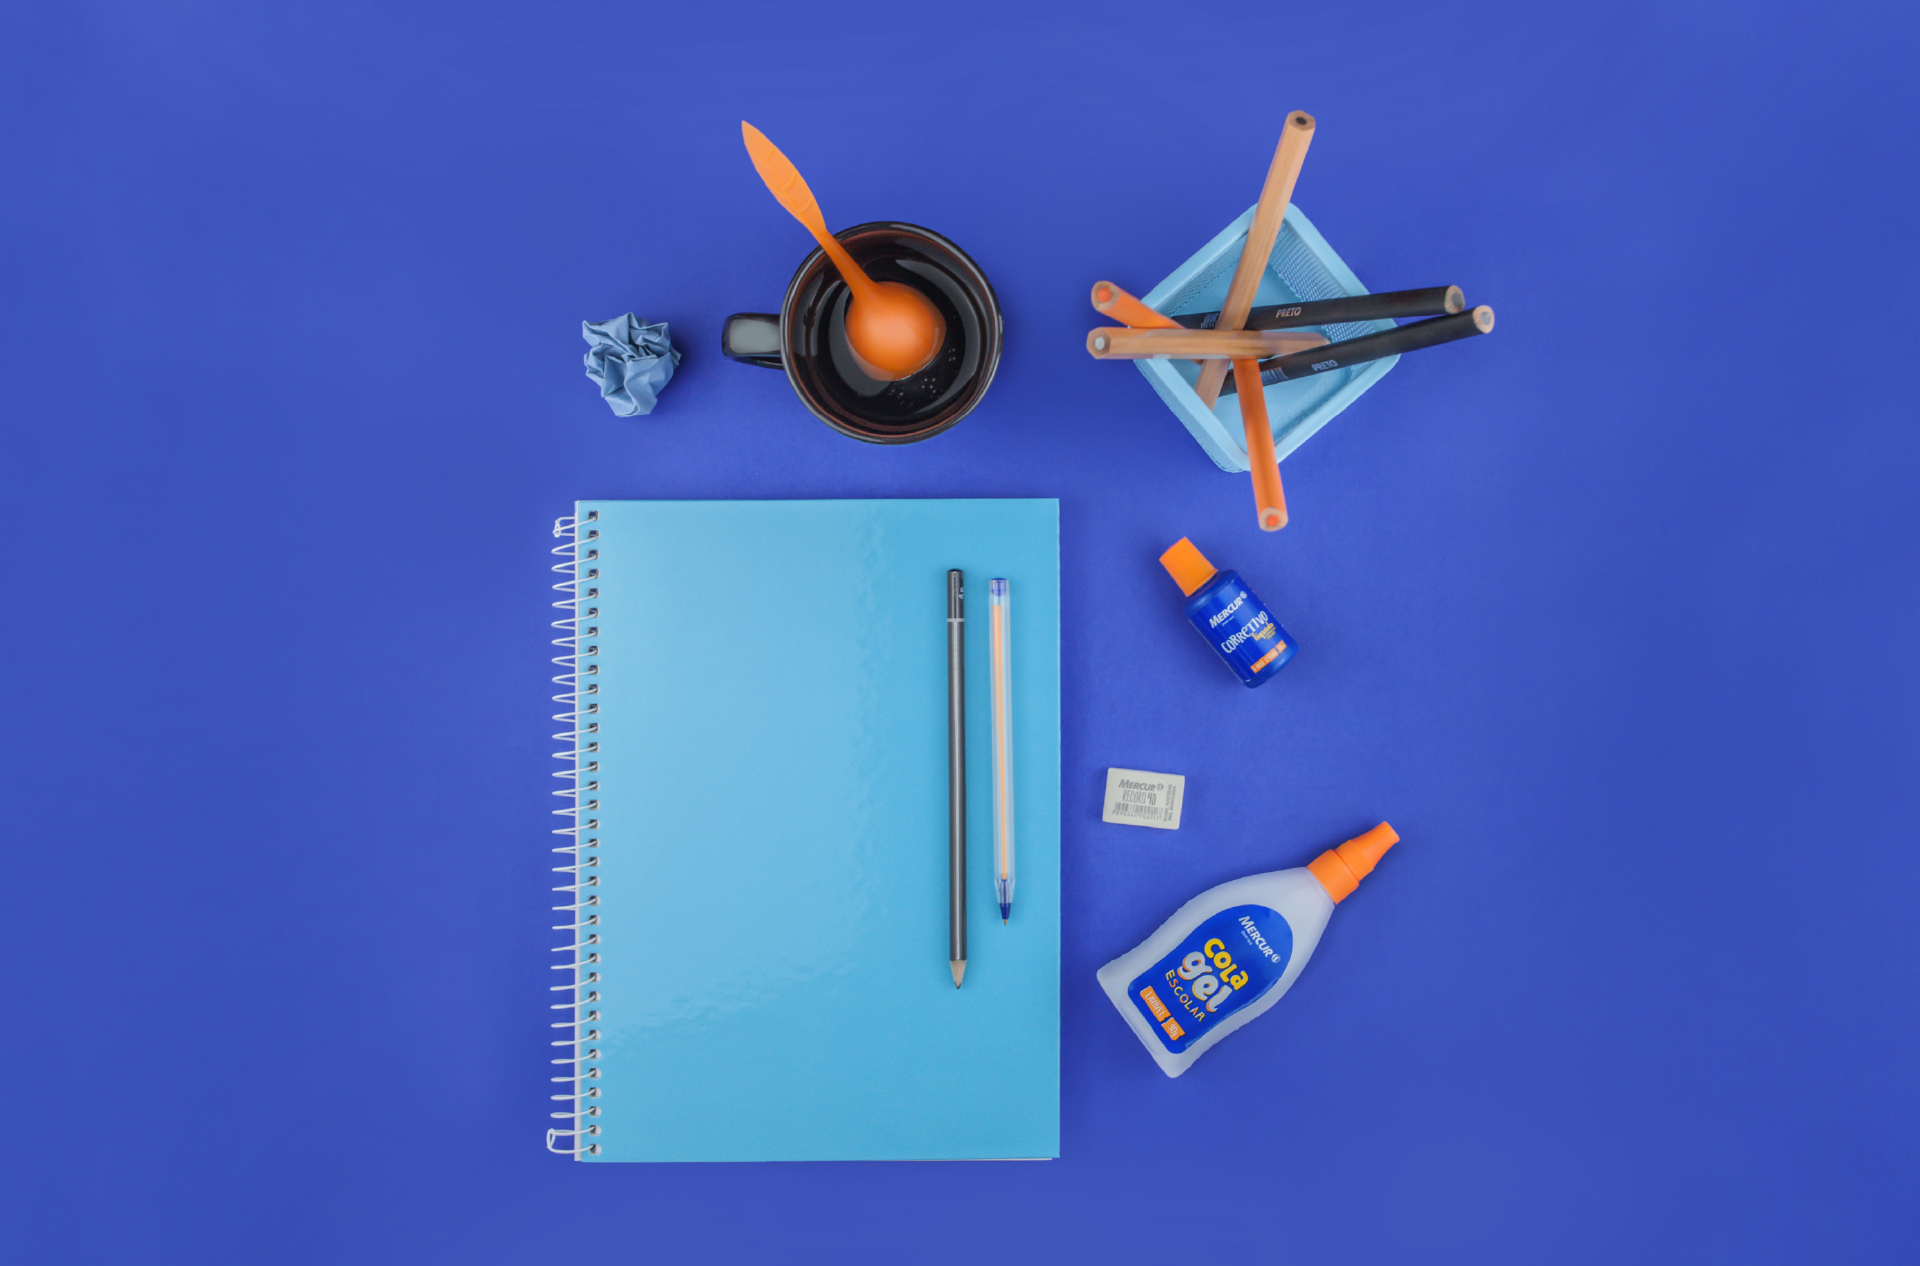 Sobre uma superfície azul, há diversos materiais escolares vistos de cima: um papel azul claro amassado, um porta lápis com seis lápis dentro, um caderno de cor azul clara, com um lápis e uma caneta sobre ele, um corretivo uma borracha e a Cola Gel da Mercur.